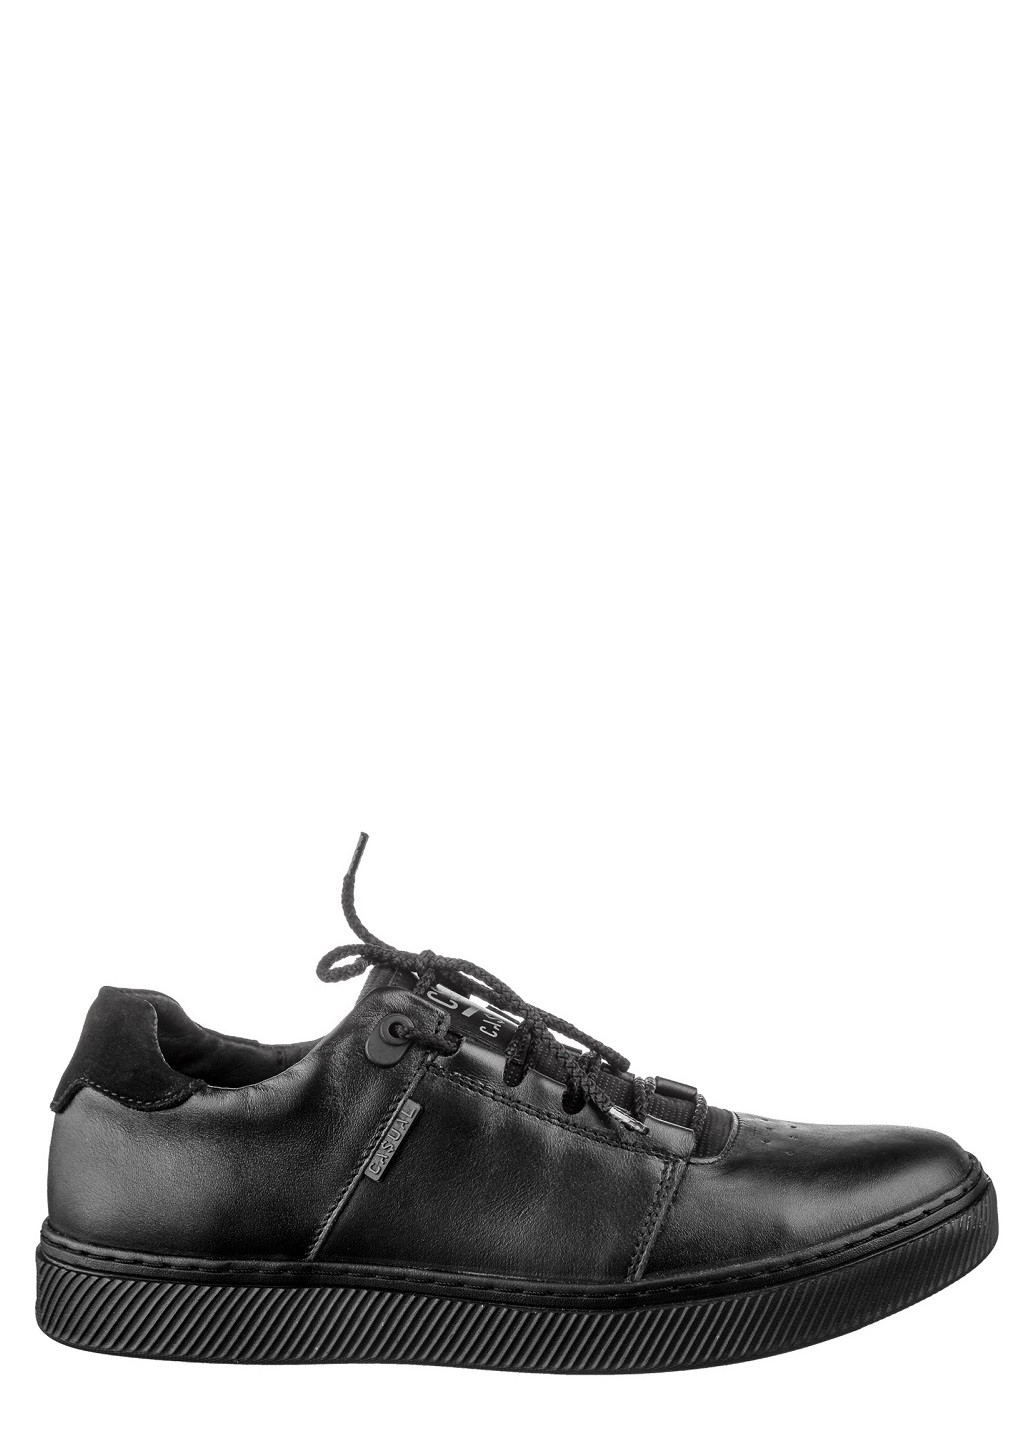 Черные туфли мужские Casual